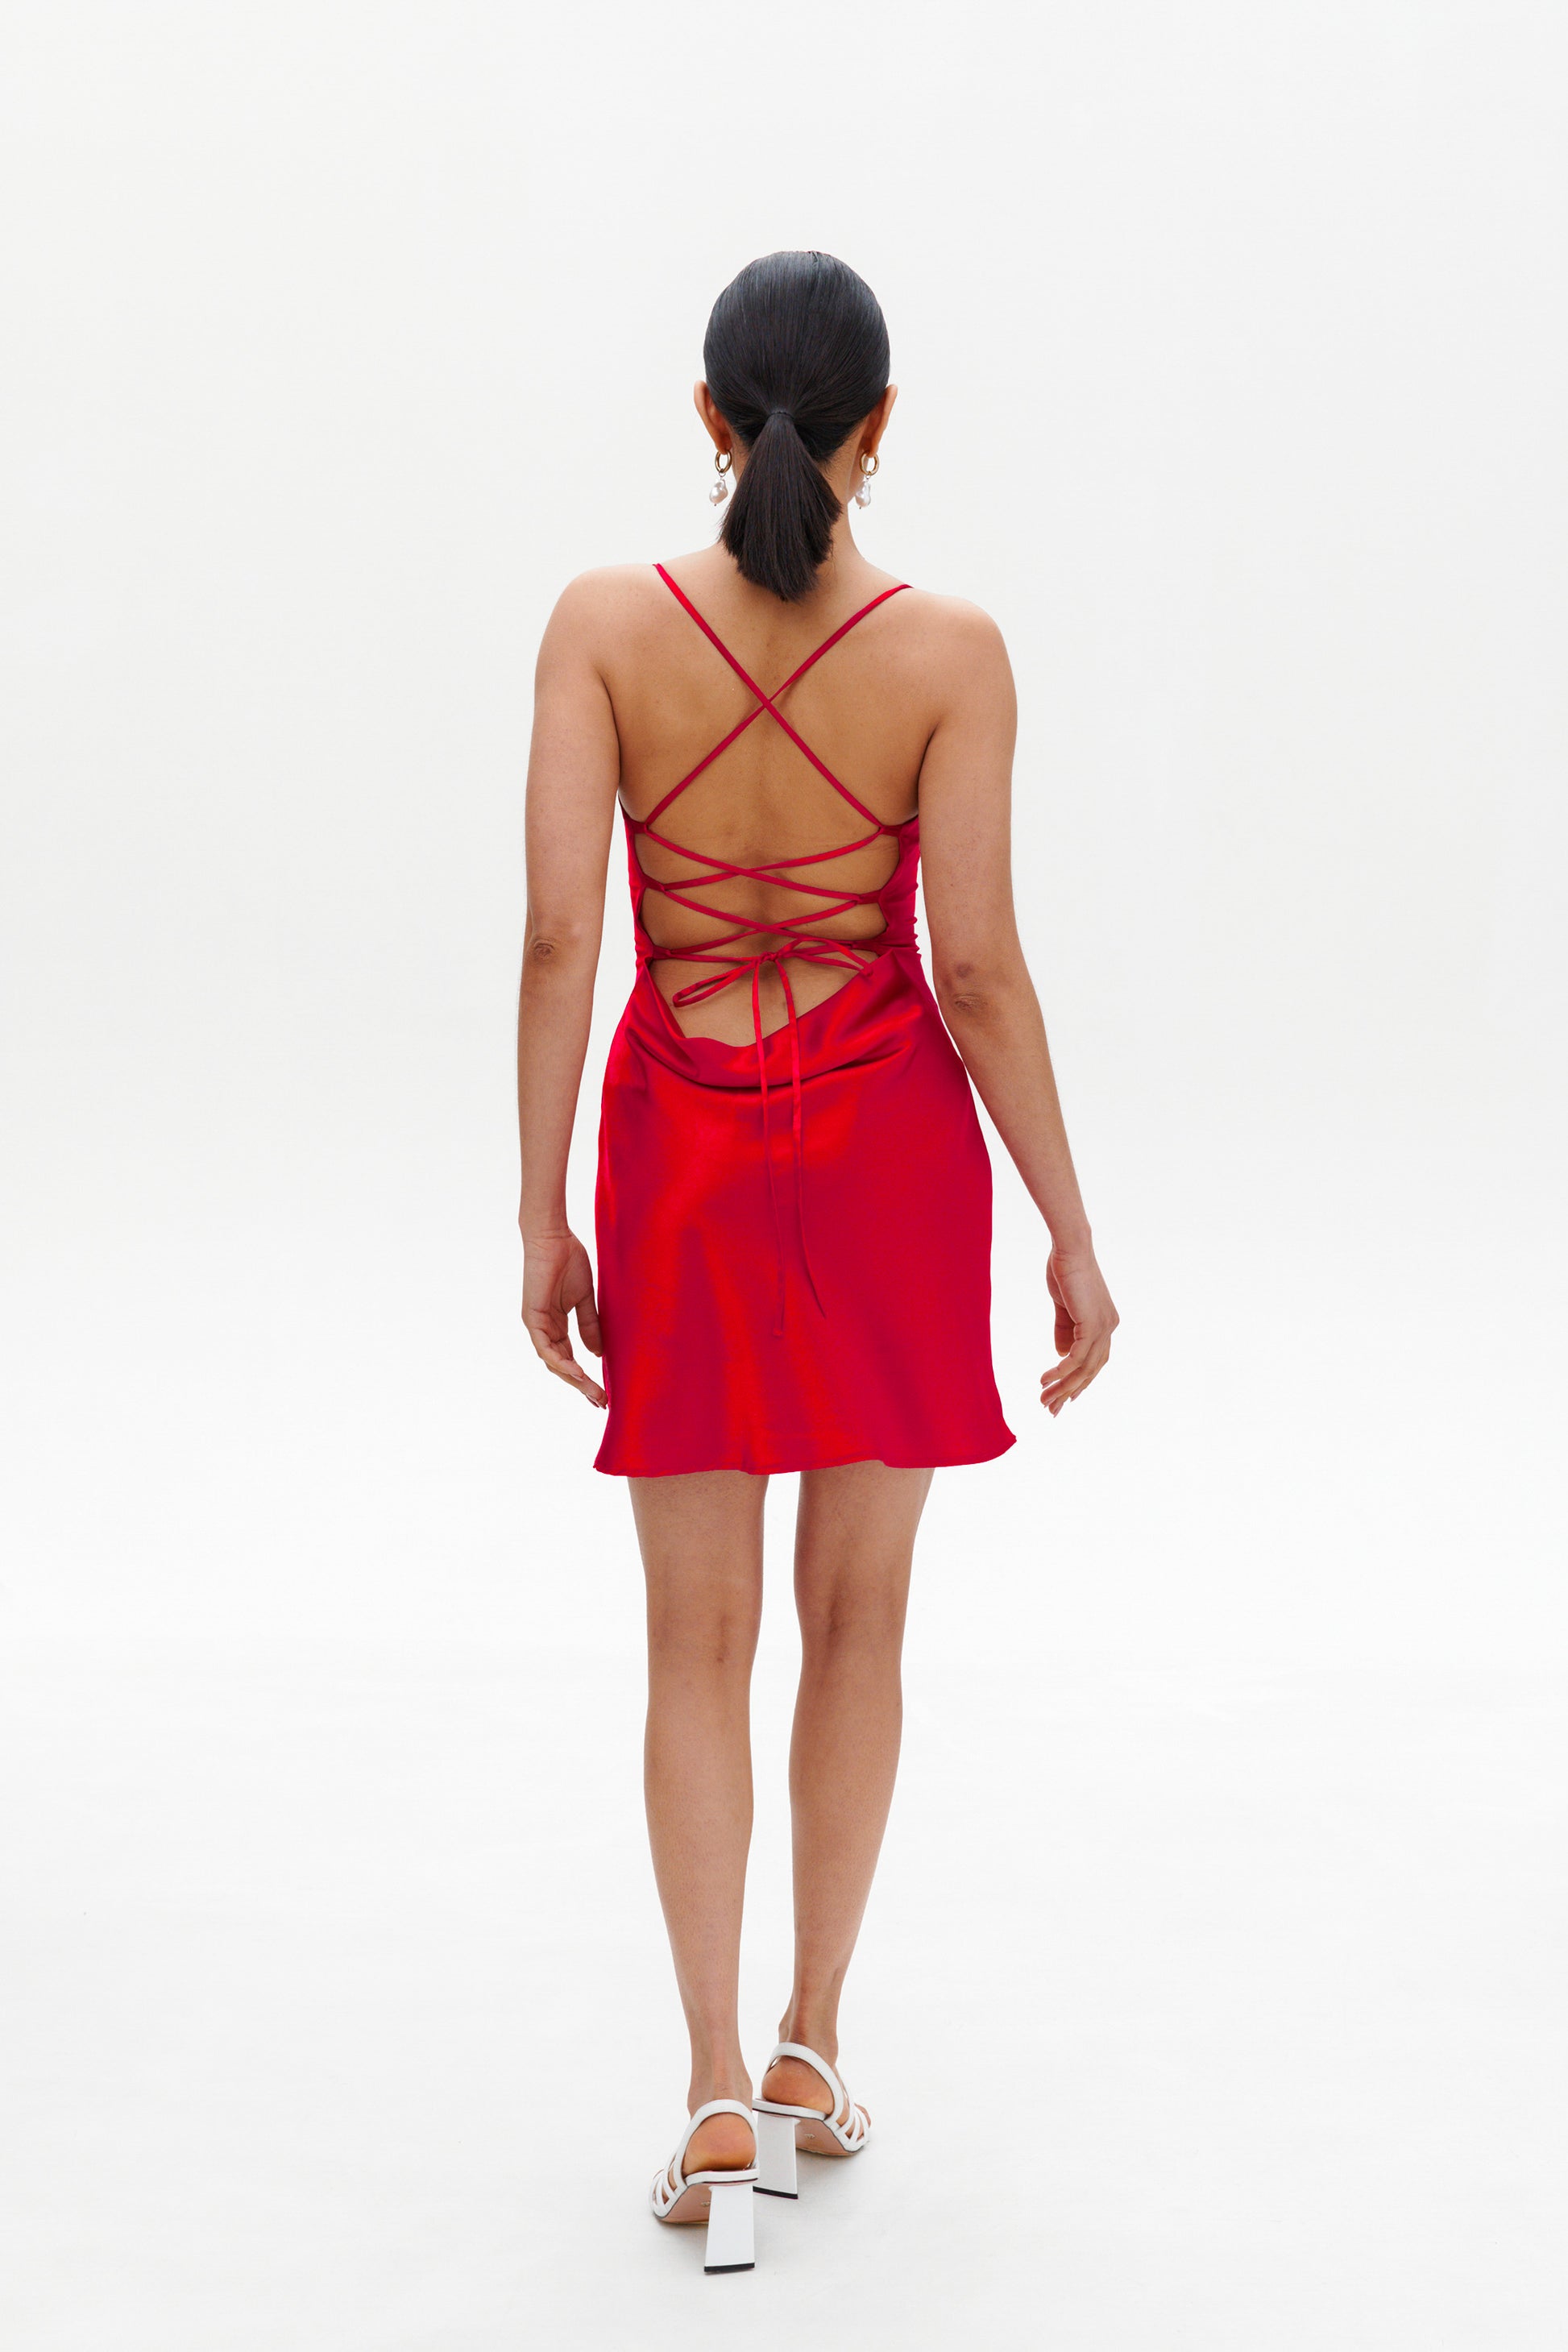 Backless red slip dress